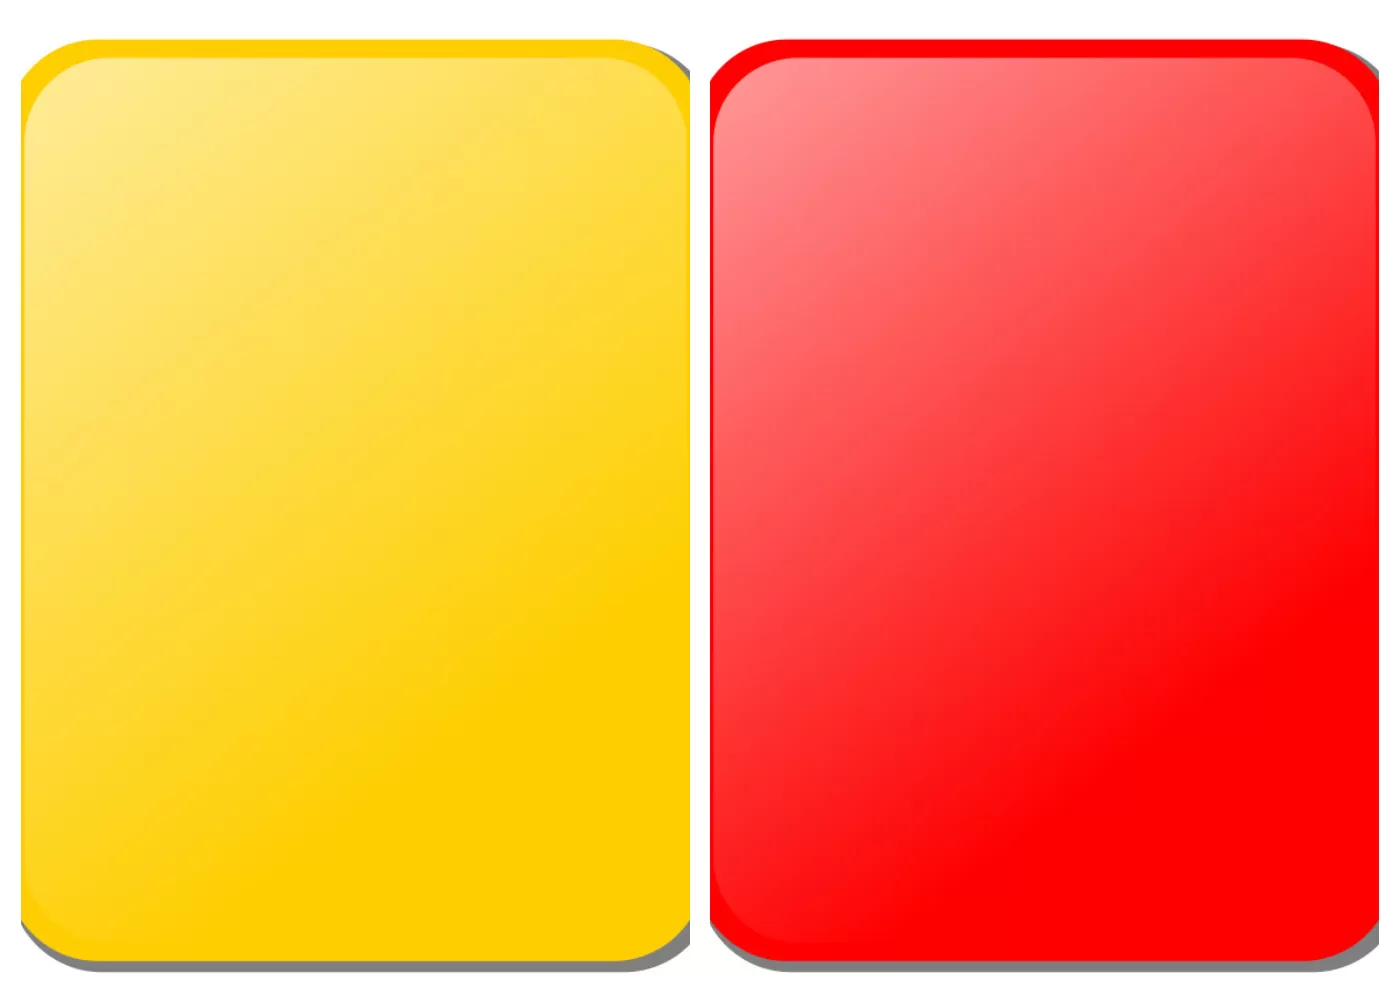 gara-gara-partai-di-piala-dunia-inilah-kartu-kuning-dan-kartu-merah-tercipta